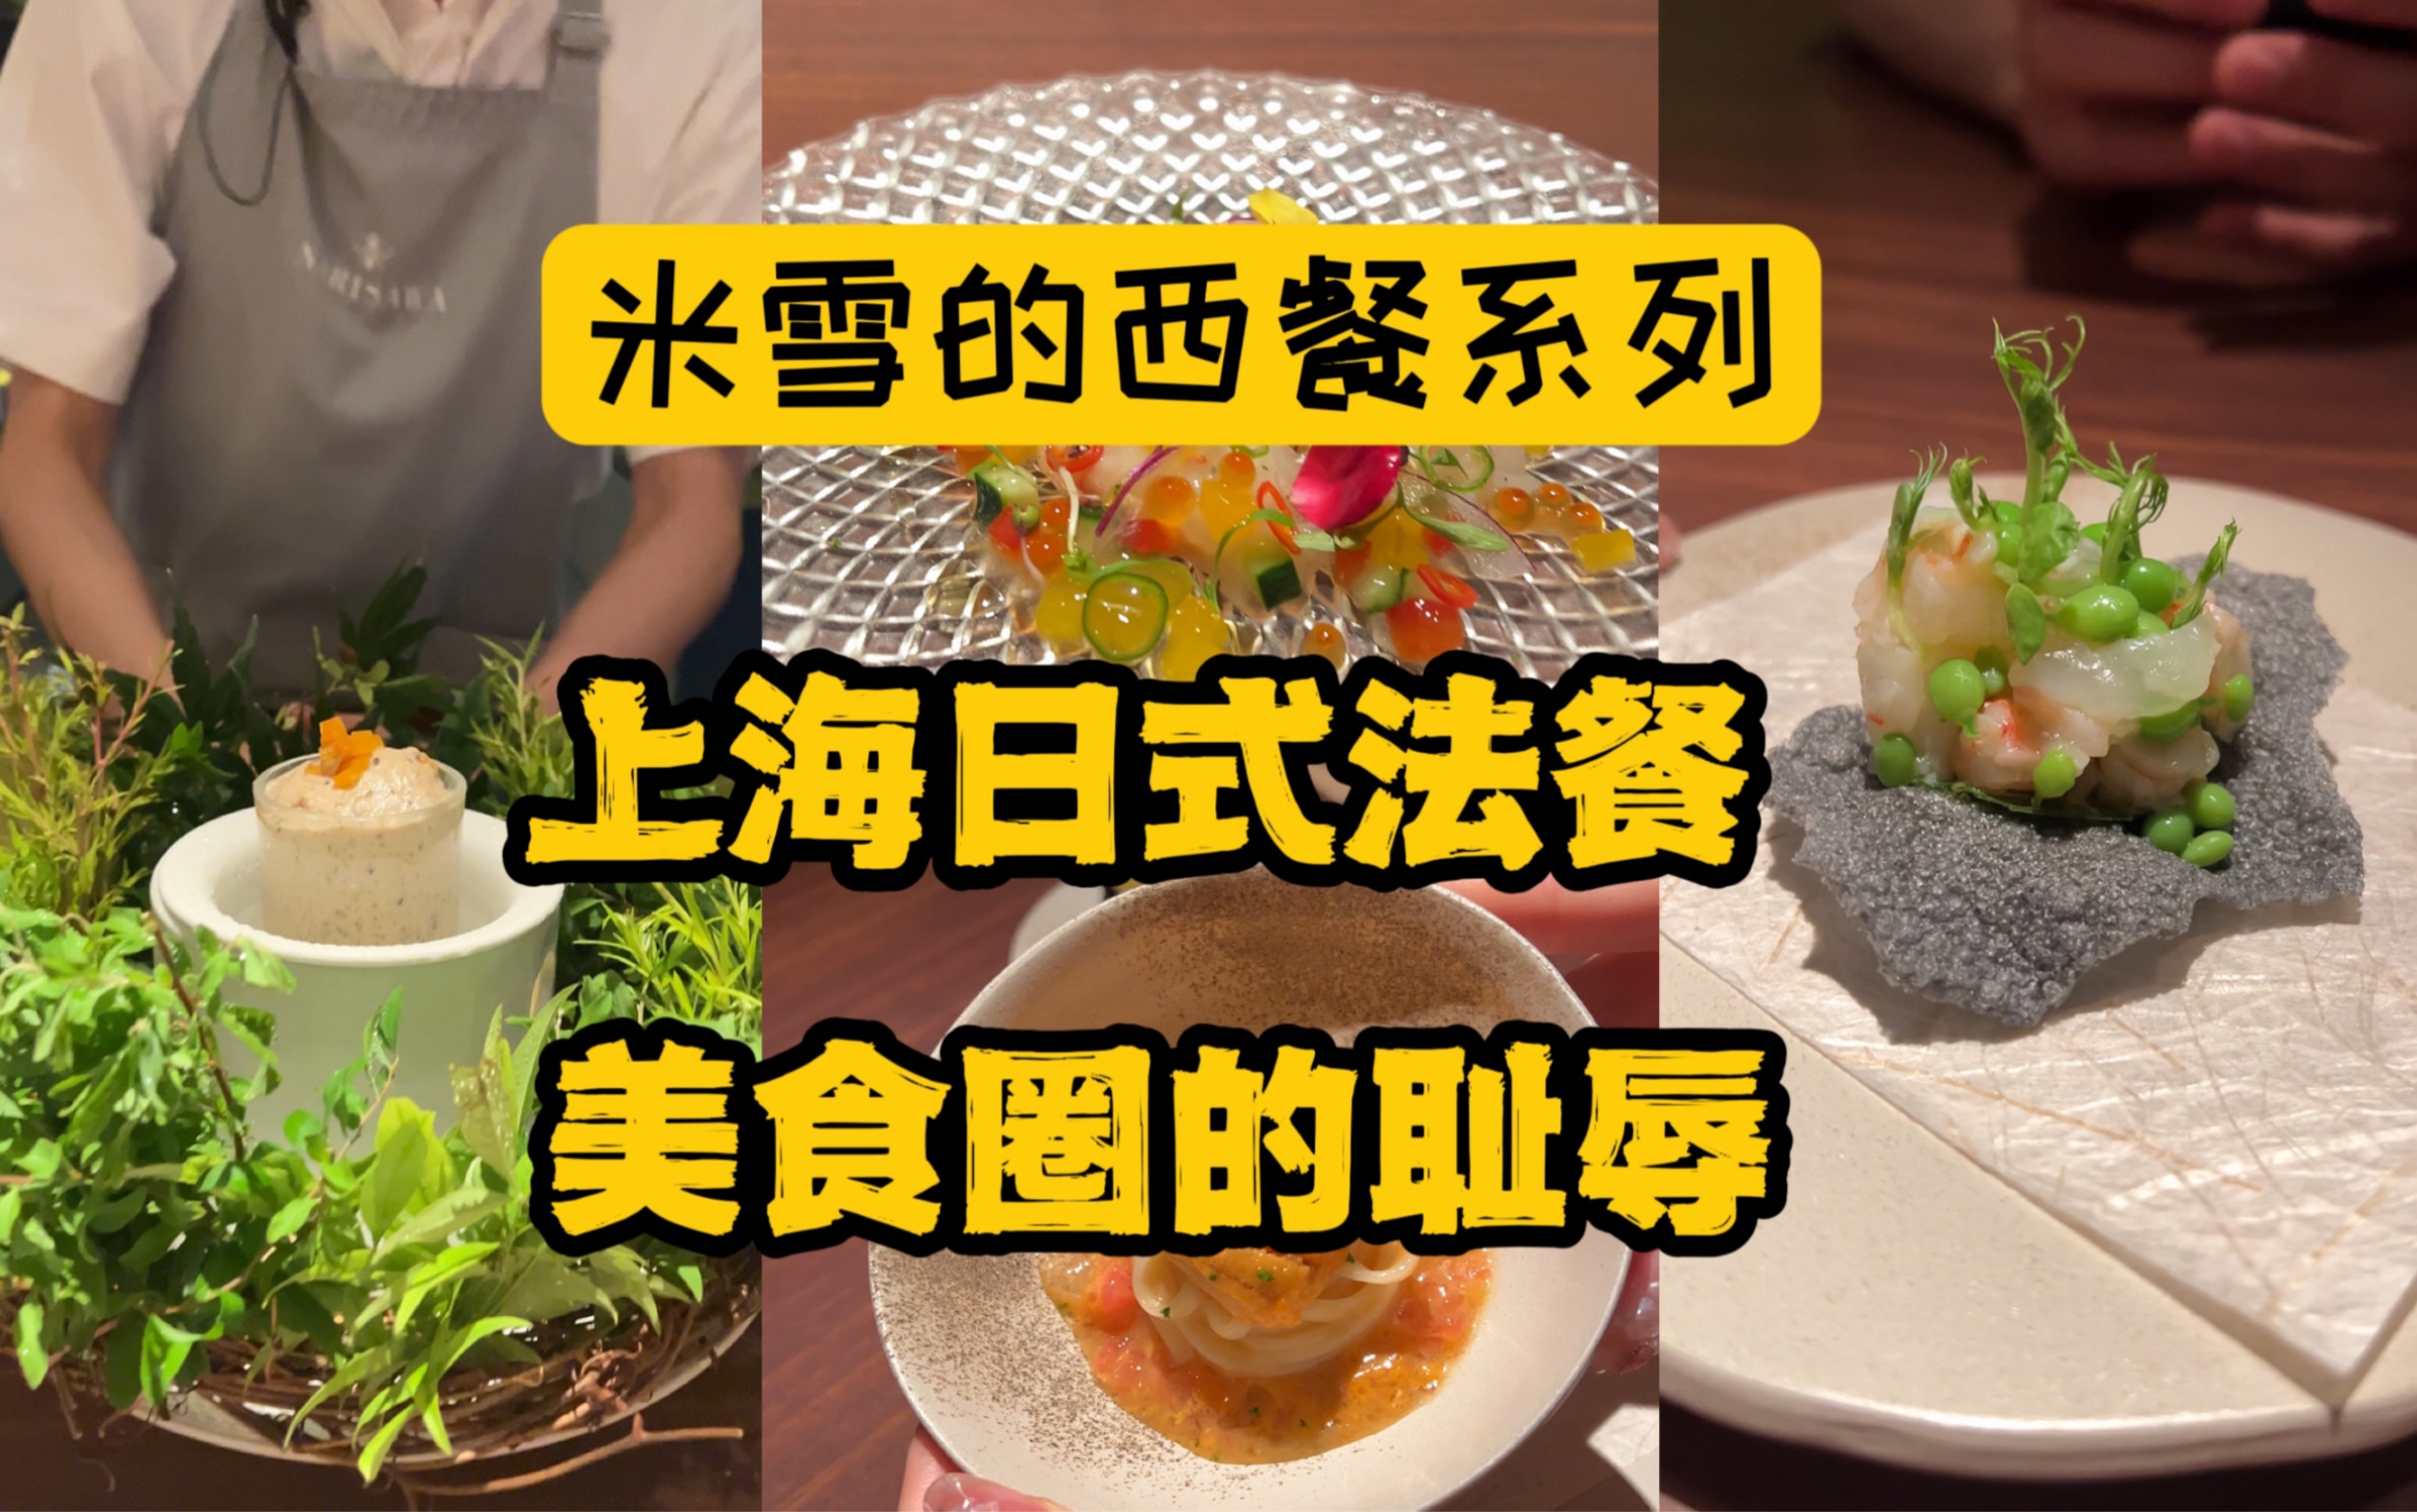 日系法餐Narisawa欺负上海韭菜多？看到结尾的电话录音你就会明白为何刚开业就各大美食博主好评如潮。但凡这家店在上海能火，都是上海美食圈的耻辱。